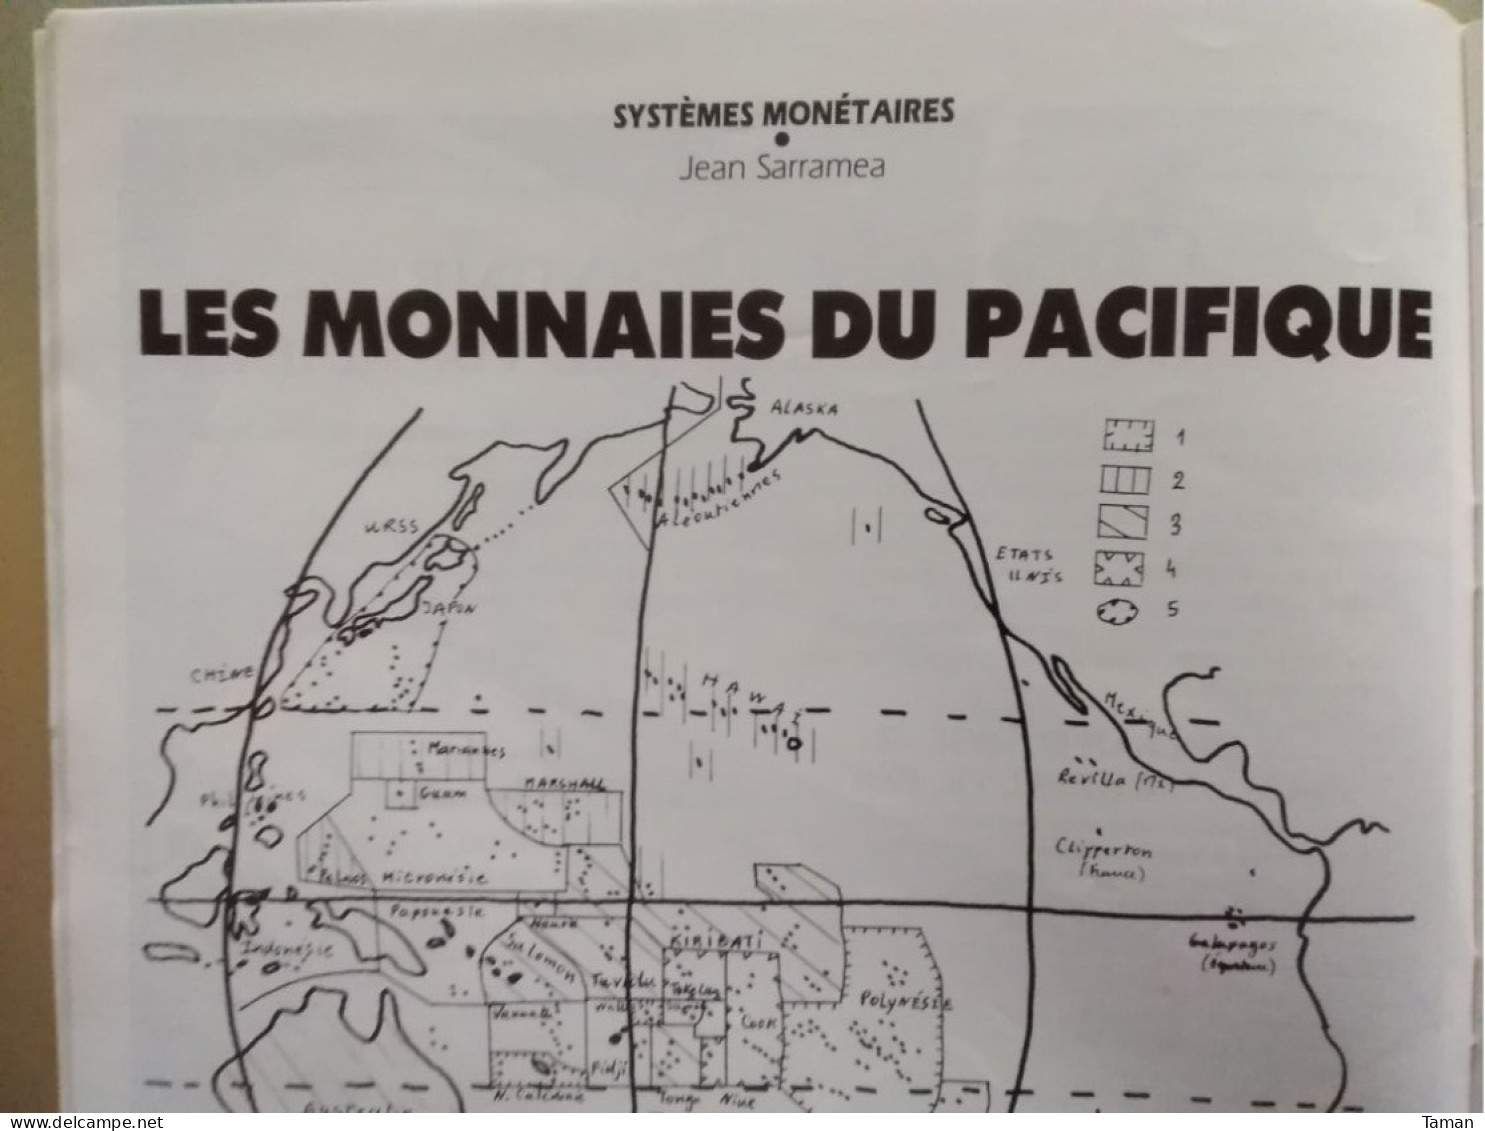 Numismatique & Change - Monnaies Du Pacifique - Les Concours 10 Et 100 F - Contremarque - La Taille Du Boulanger - Français